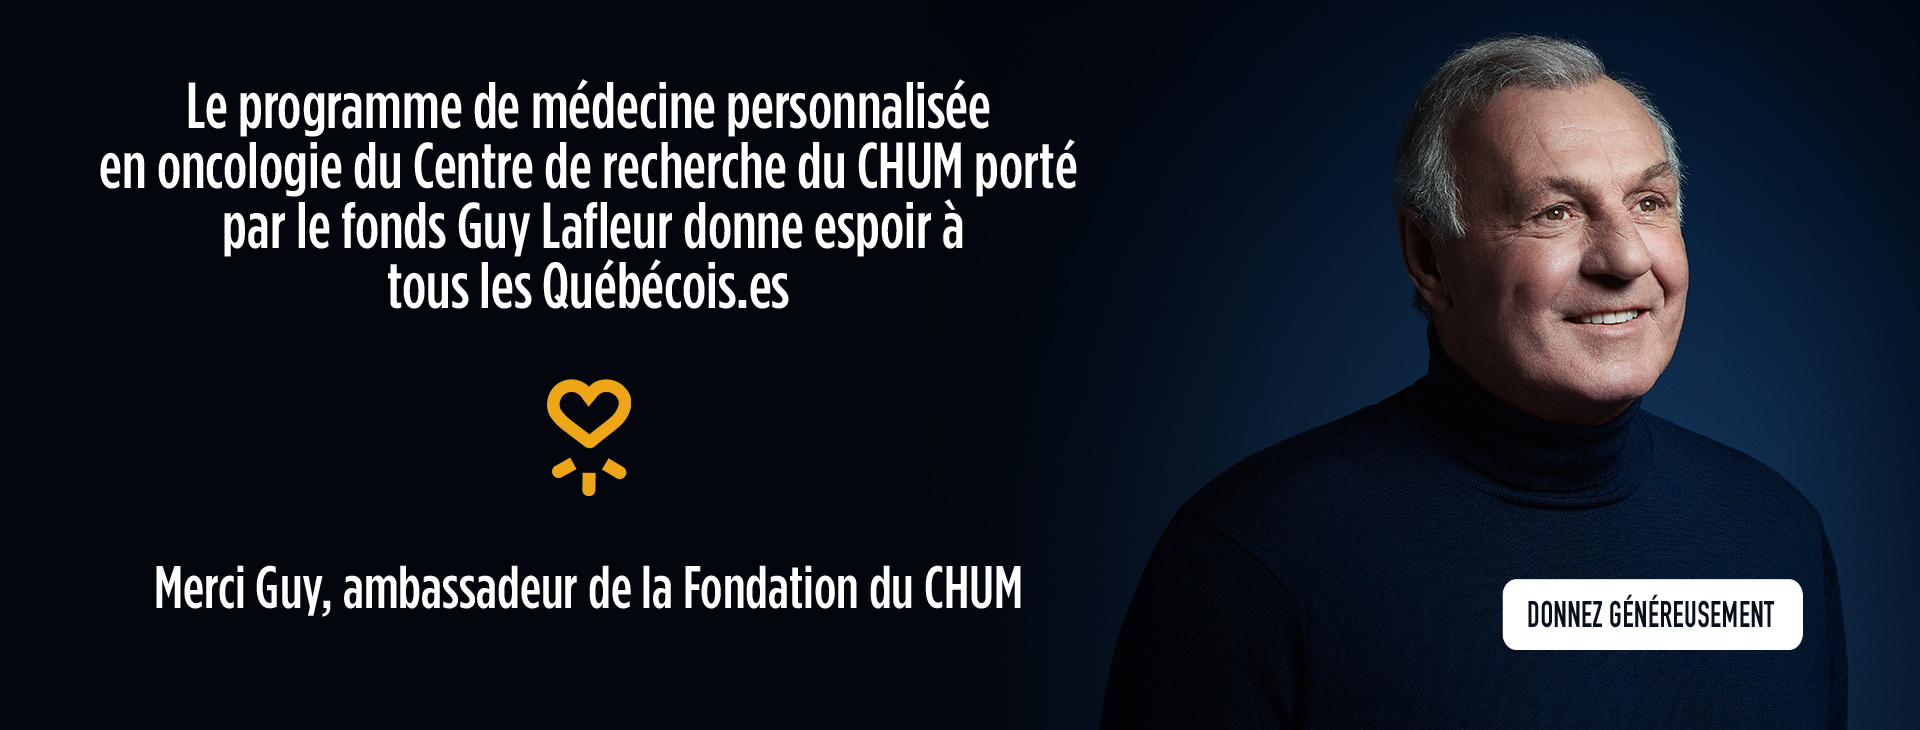 Hommage à Guy Lafleur ambassadeur de la Fondation CHUM